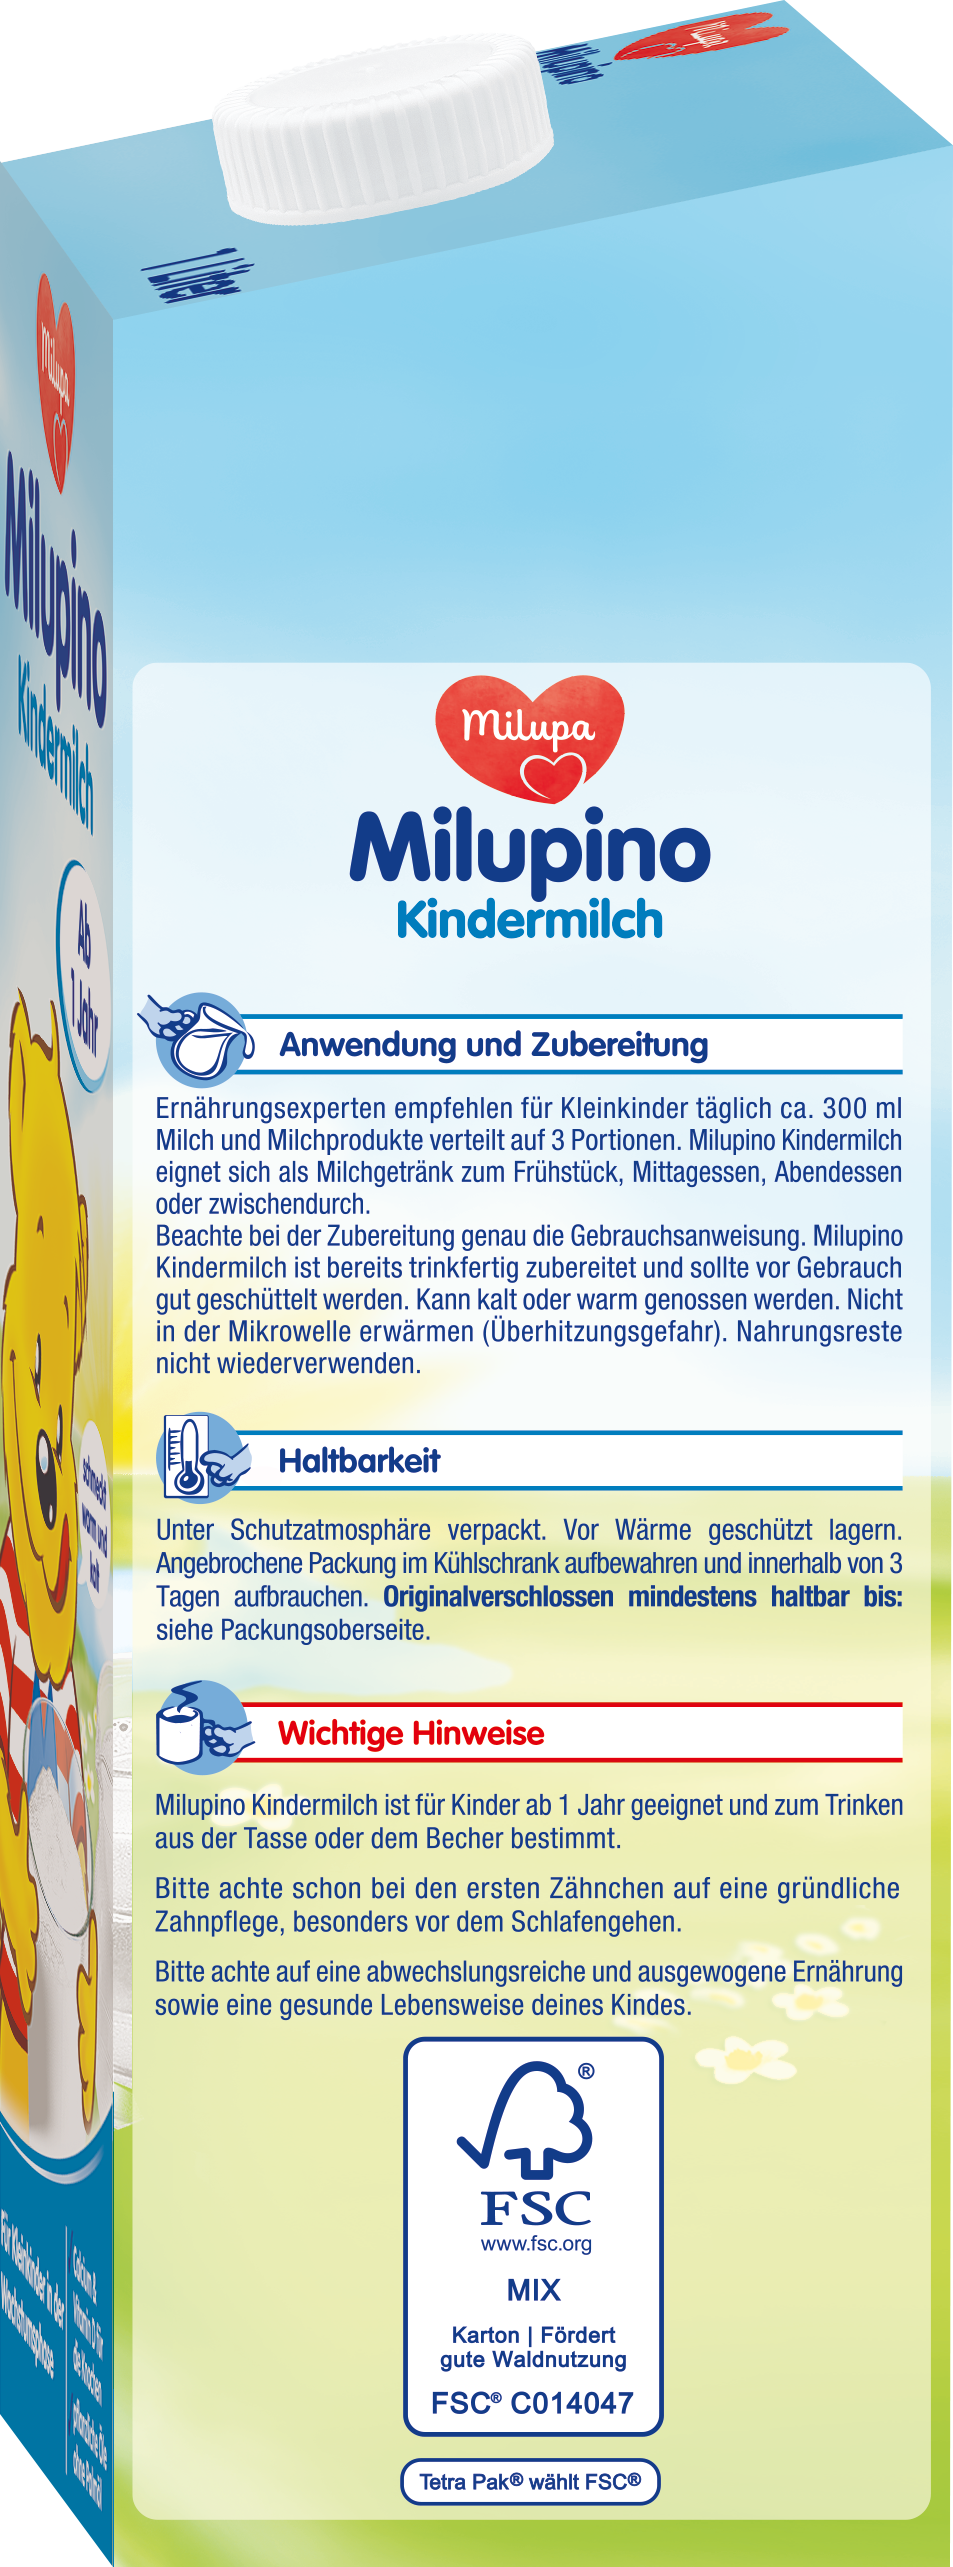 Milupino Kindermilch Trinkfertig (1L)